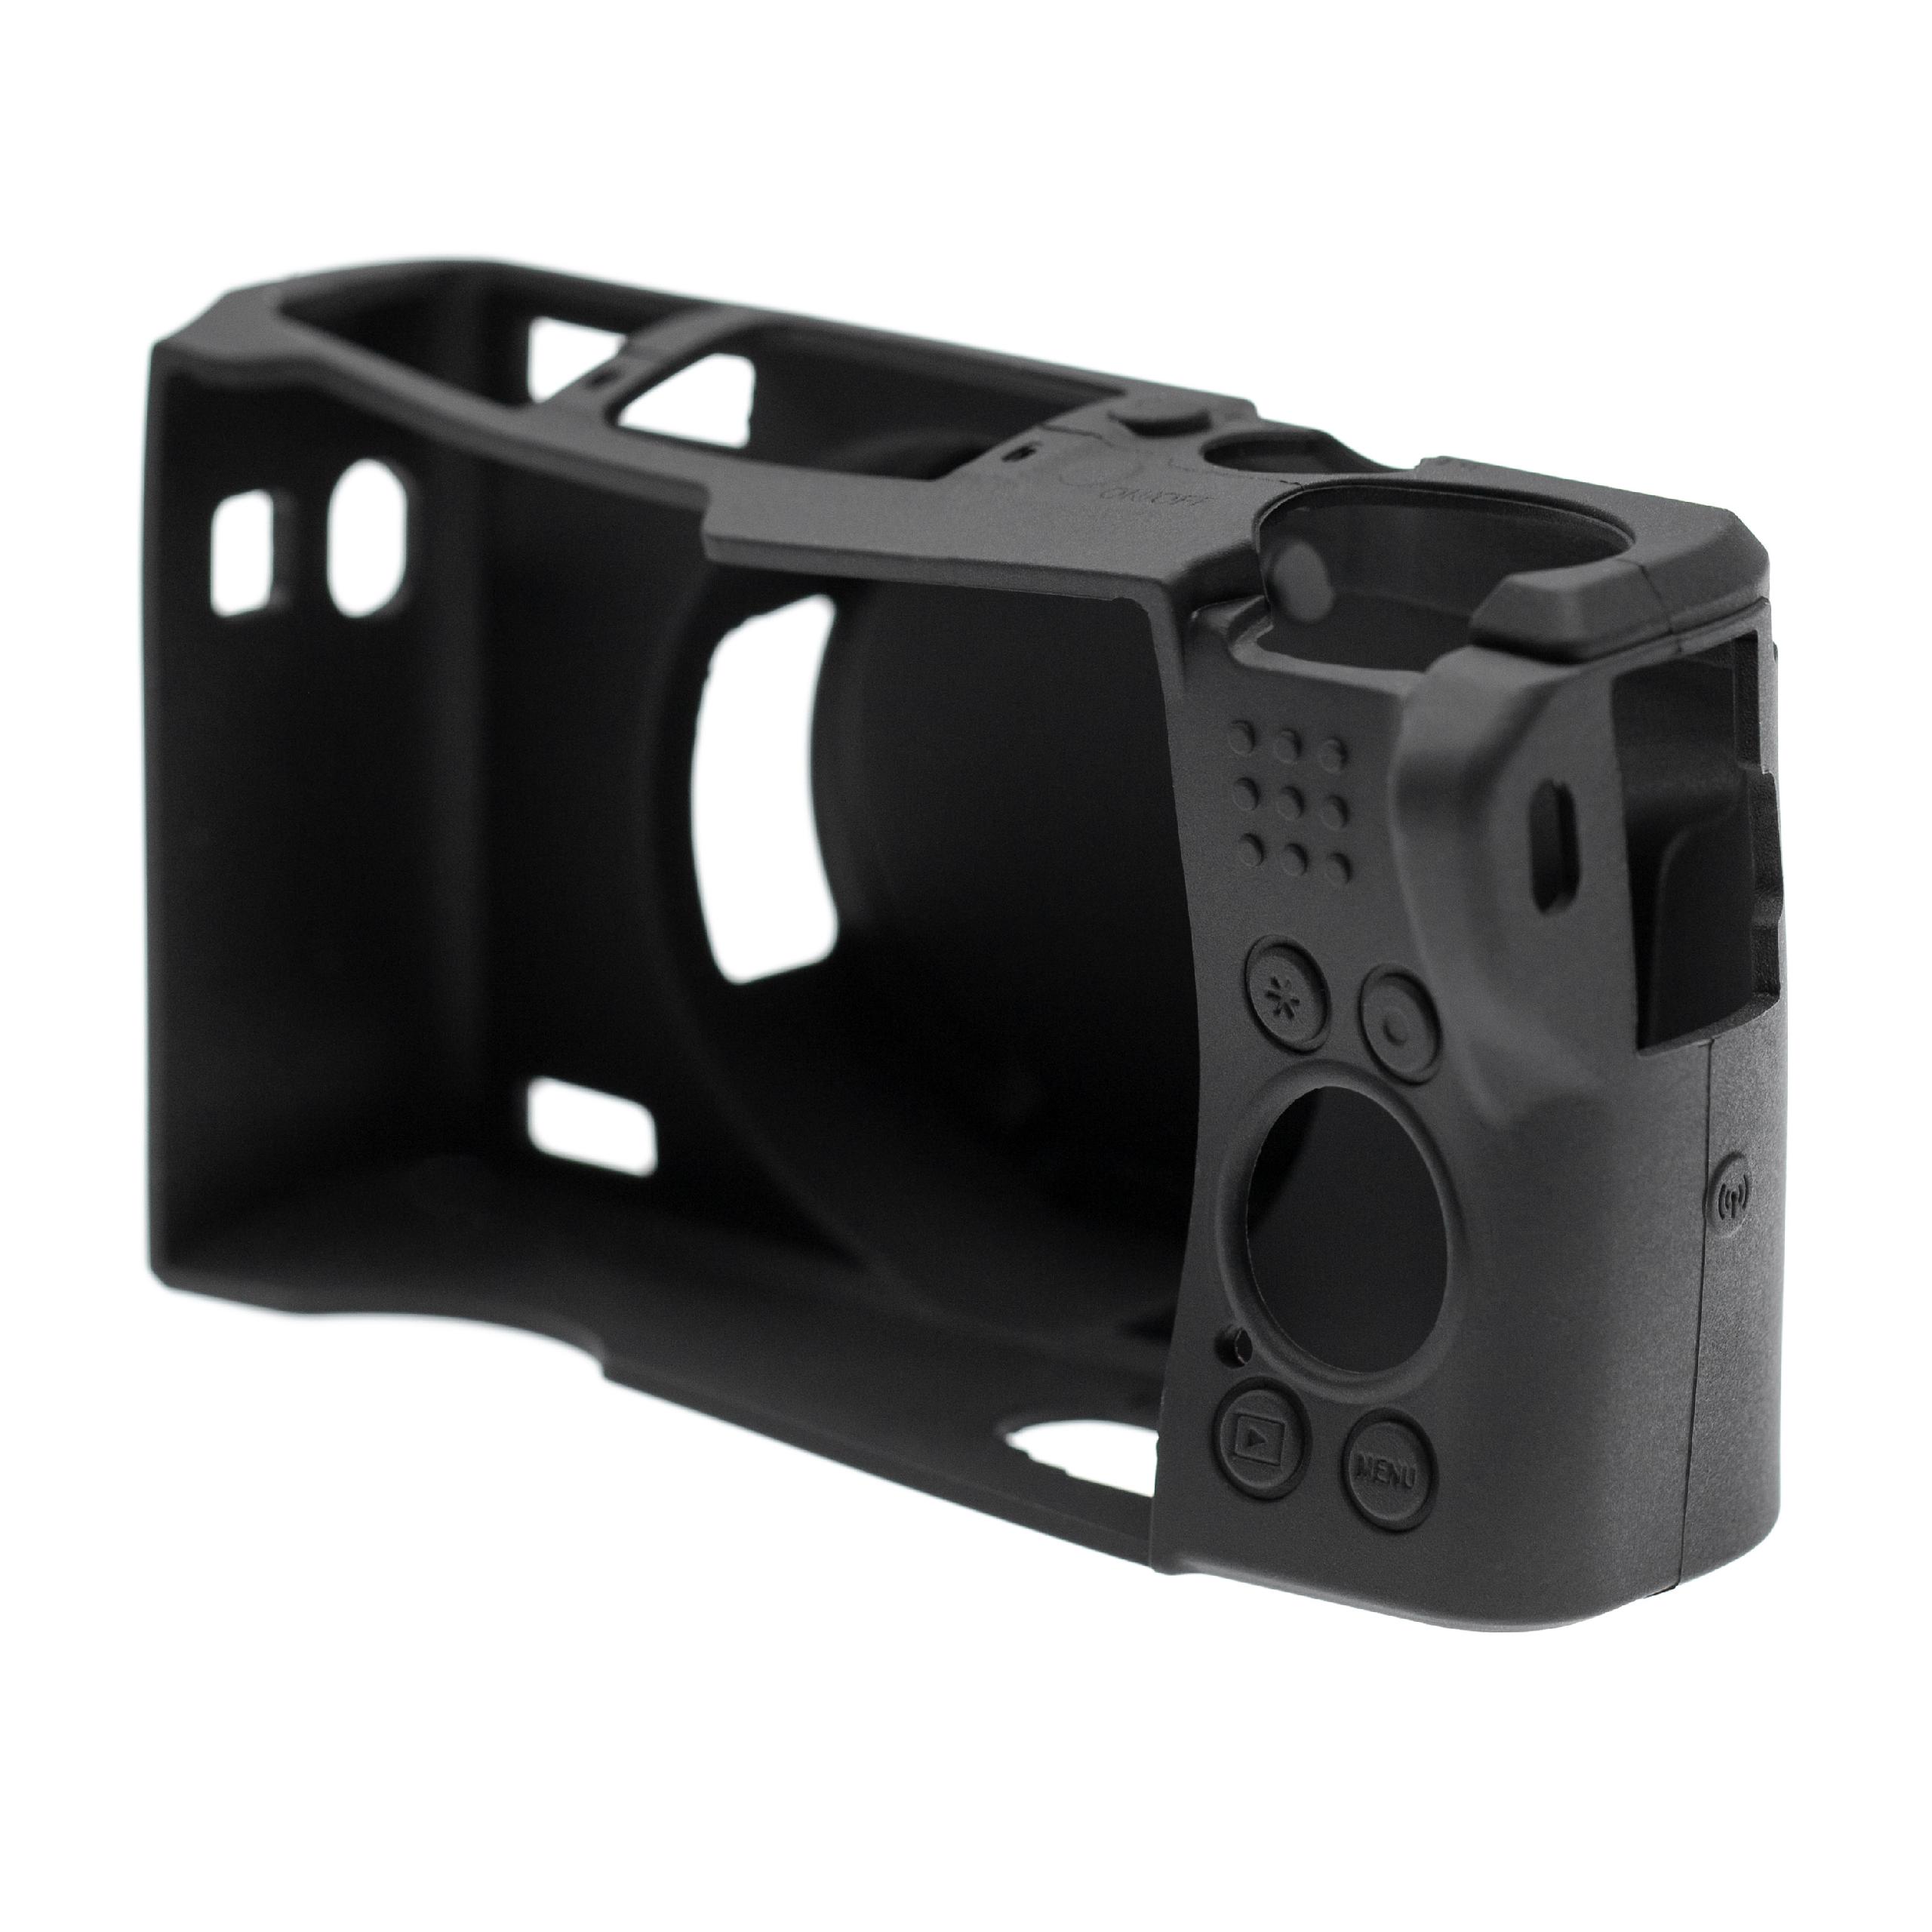 Étui de protection pour appareils photo Canon PowerShot G5X Mark II - silicone, noir + housse pour objectif